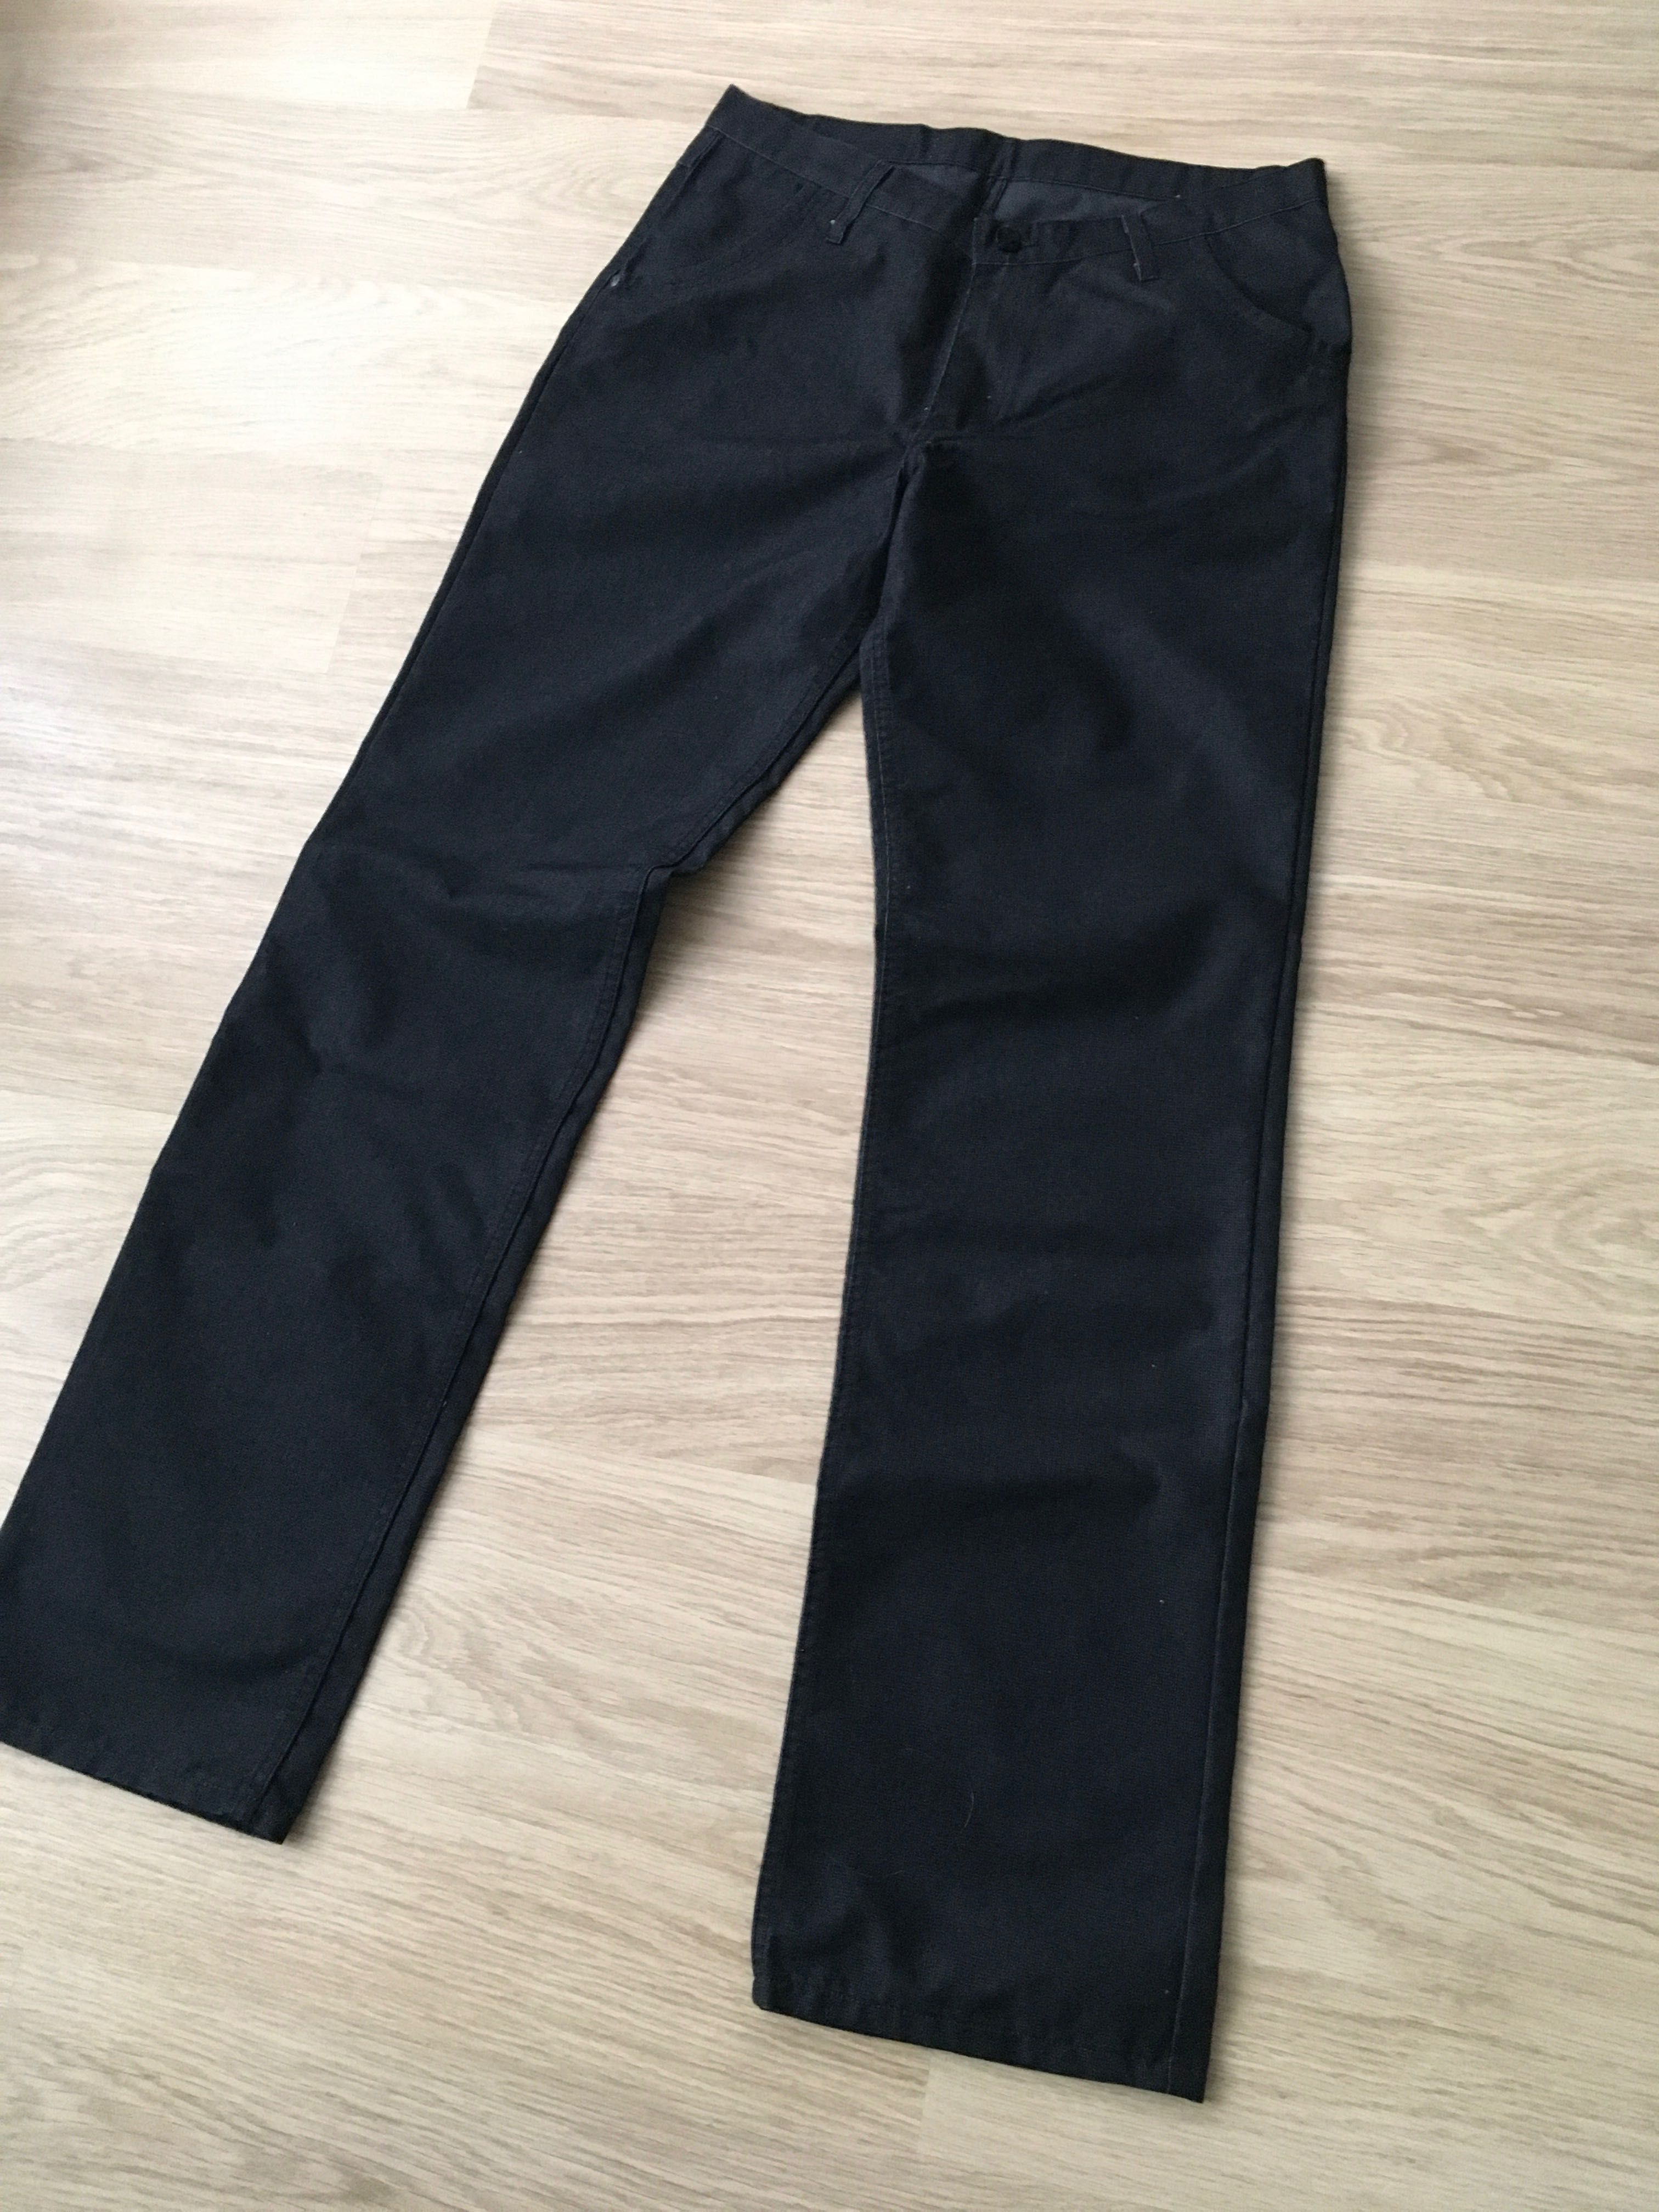 Spodnie męskie czarny grafitowy jeans rozmiar 88/118